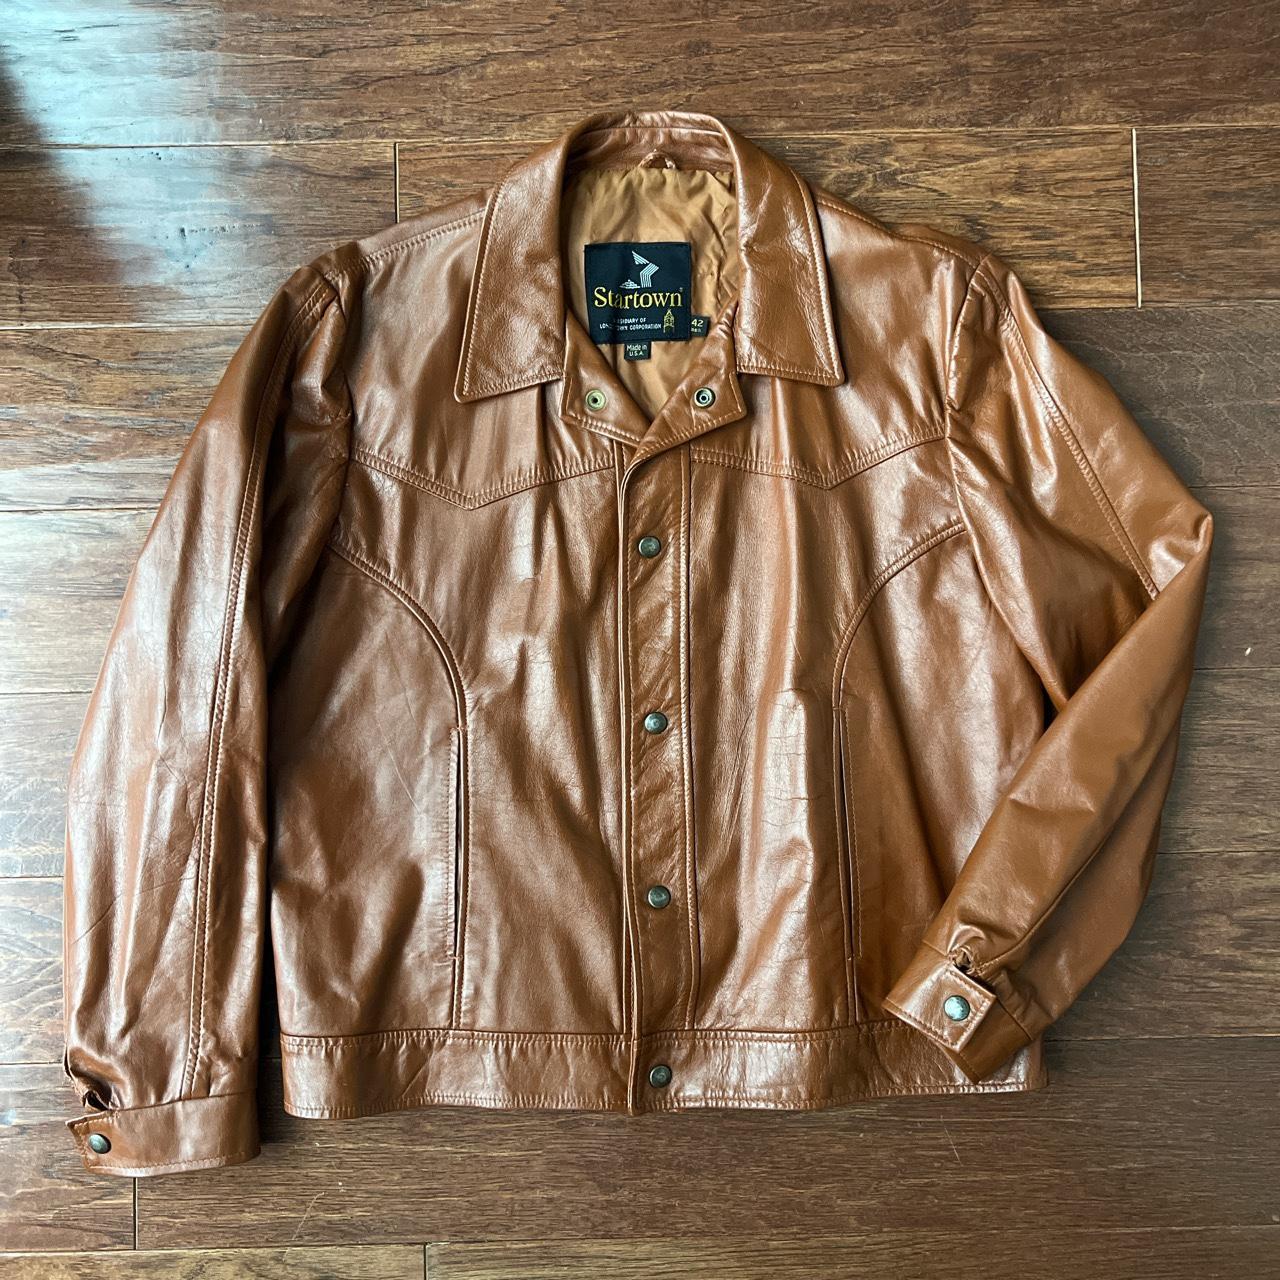 80-90's Vintage Brown leather jacketLeather状態